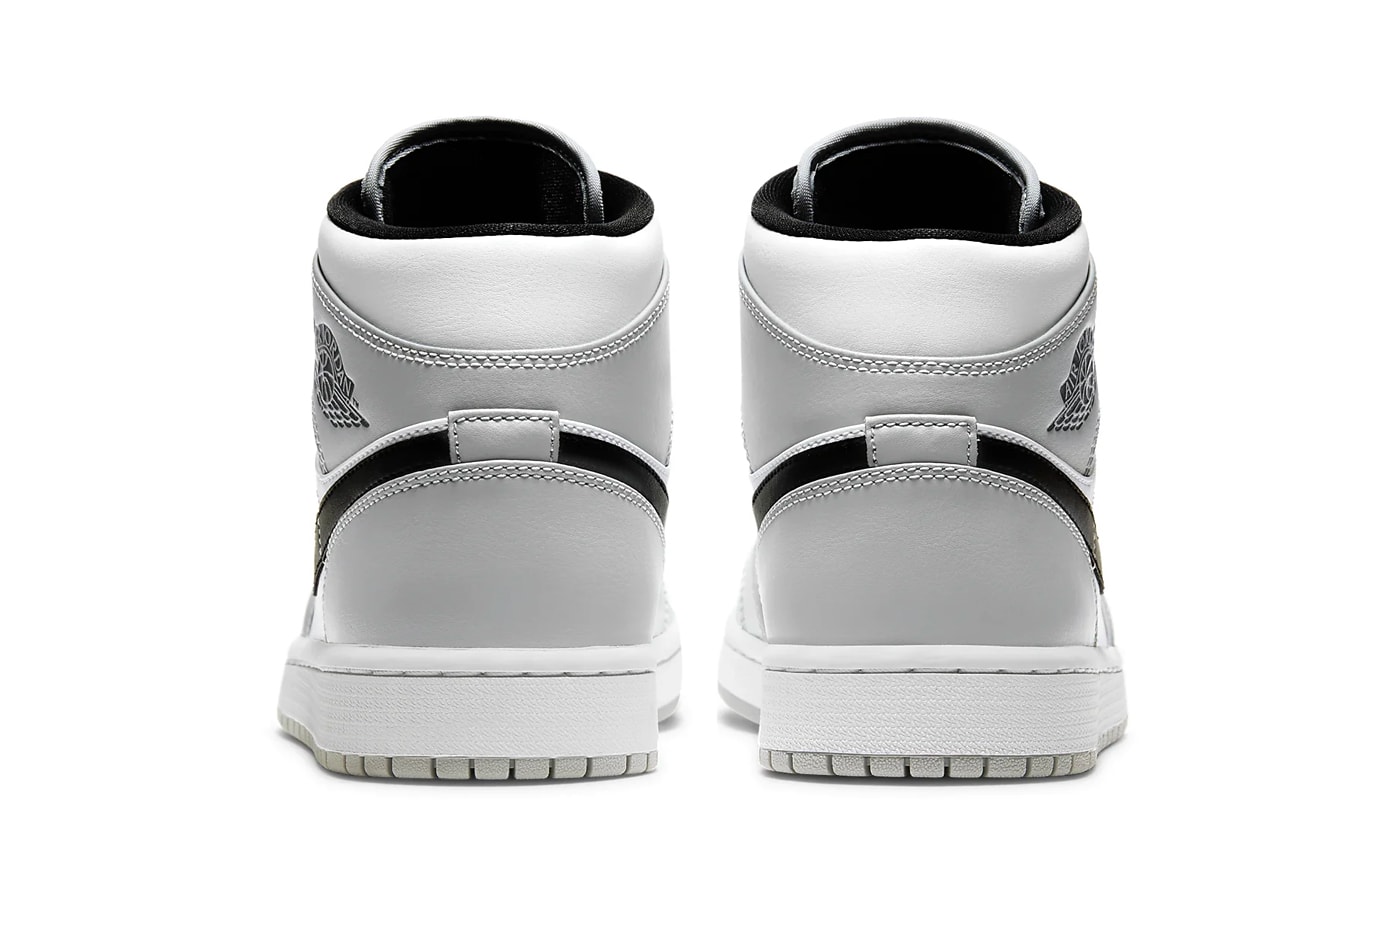 Air Jordan 1 Mid Light Ash White Black Release Info Buy Price 554724-092